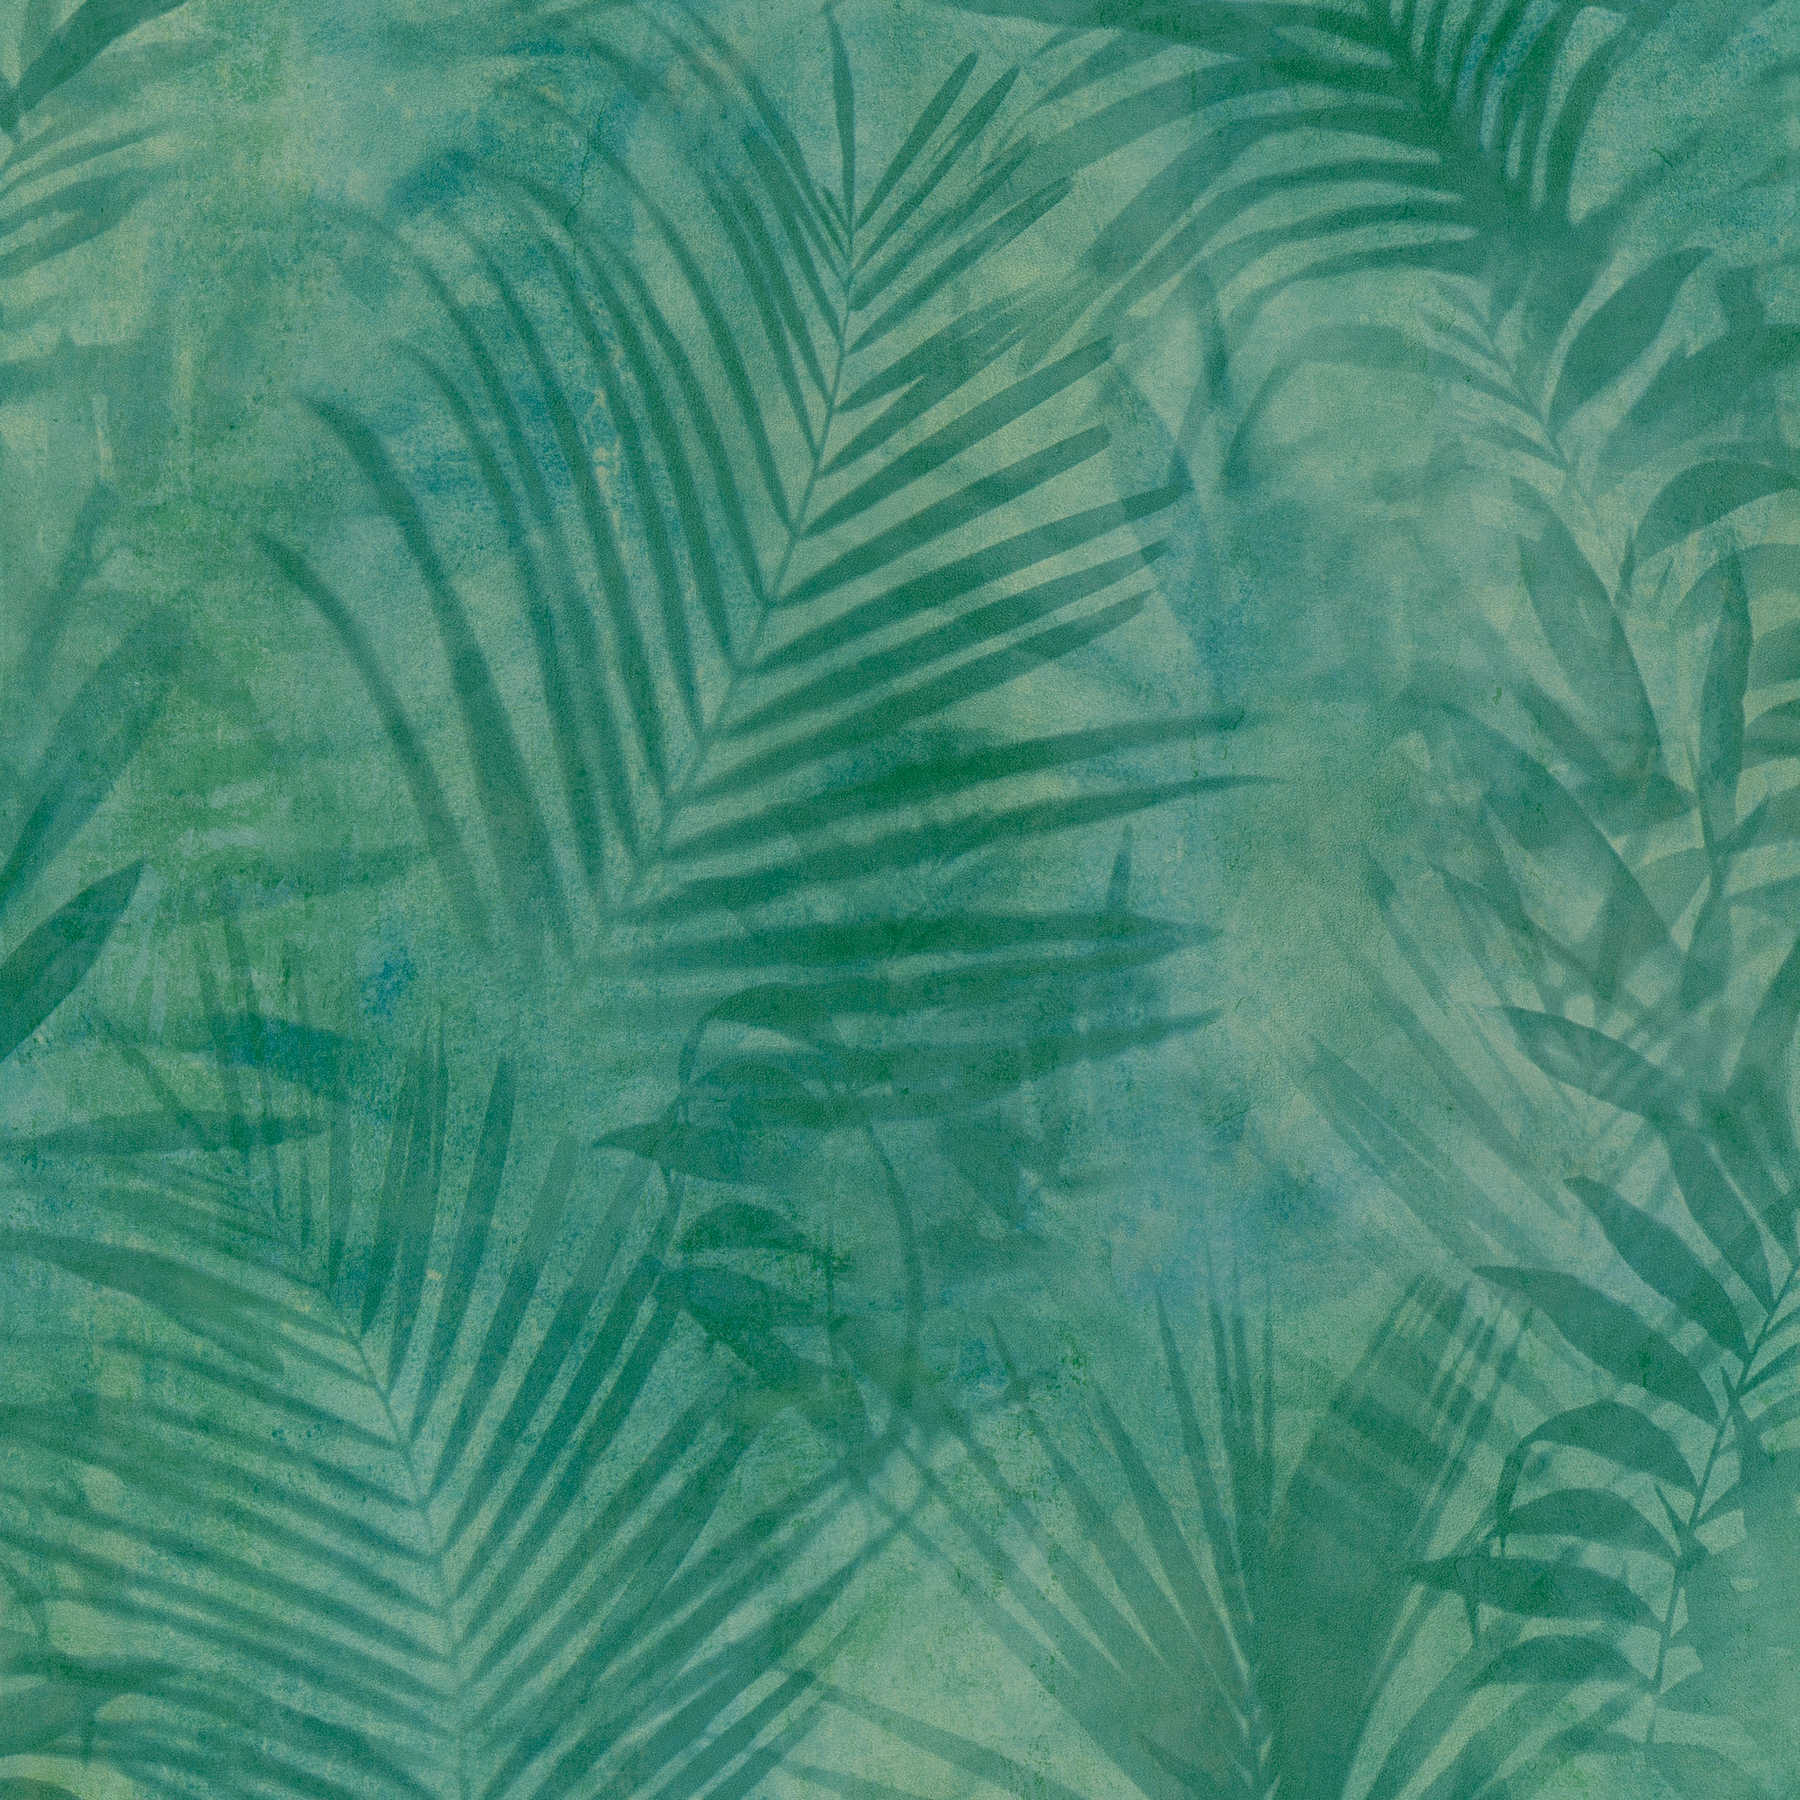 Wallpaper palm tree pattern in linen look - green, blue, yellow
